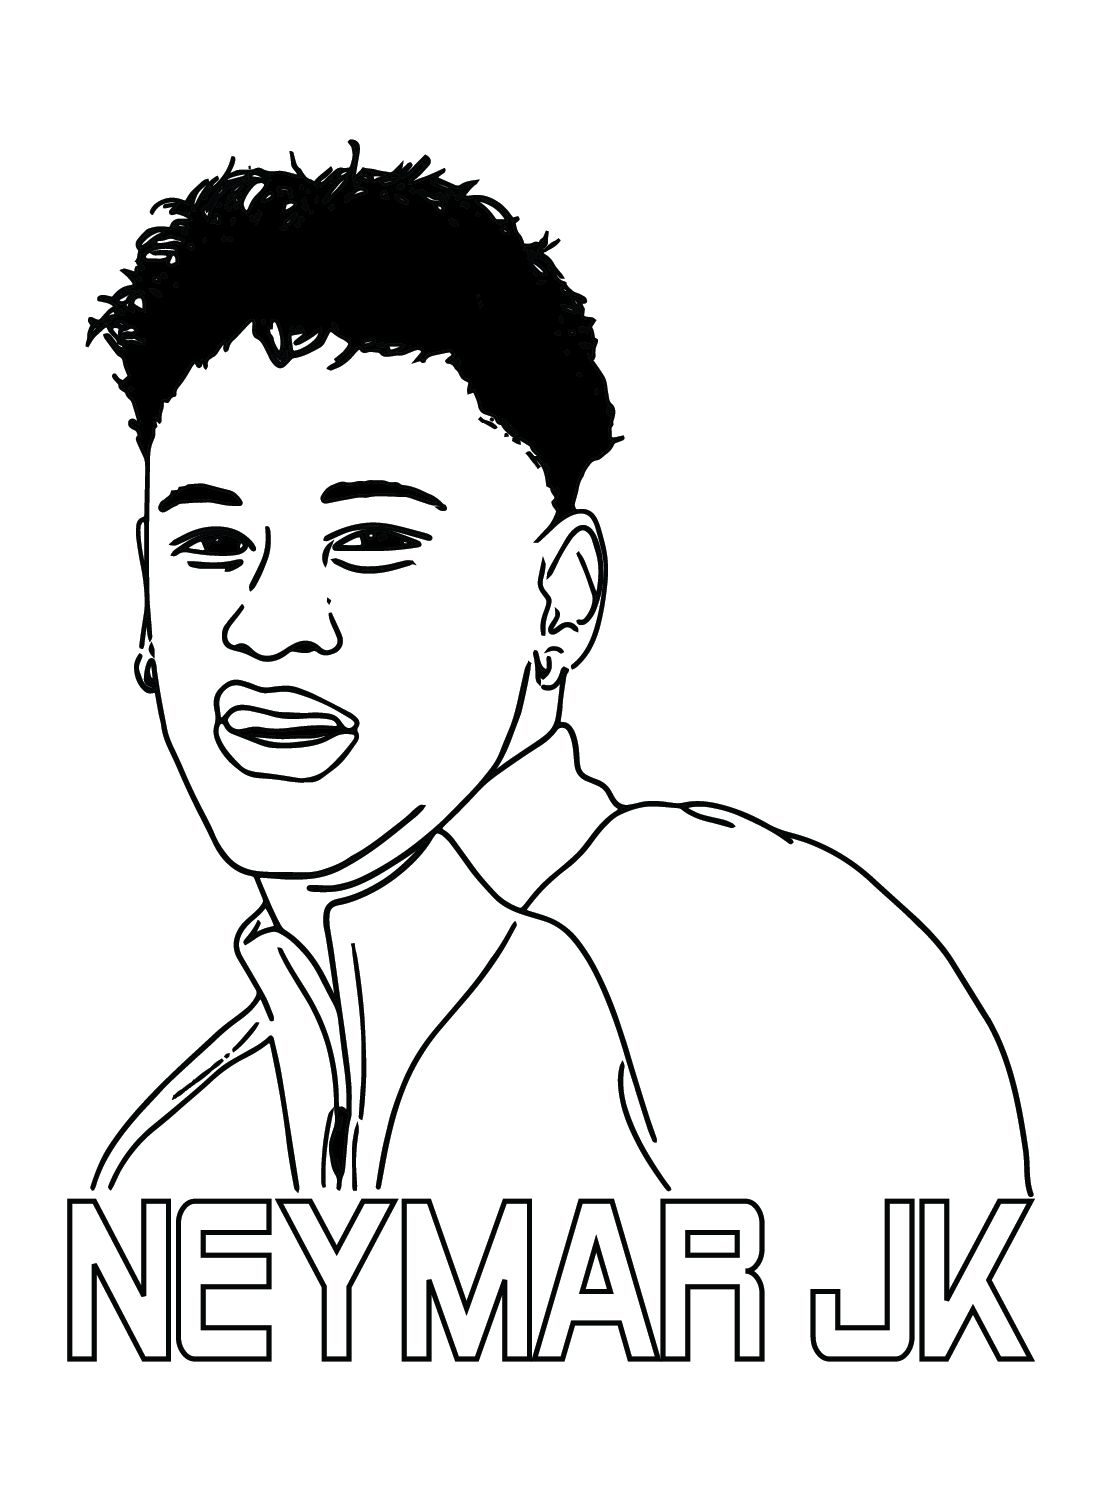 Neymar gaat printen van Neymar